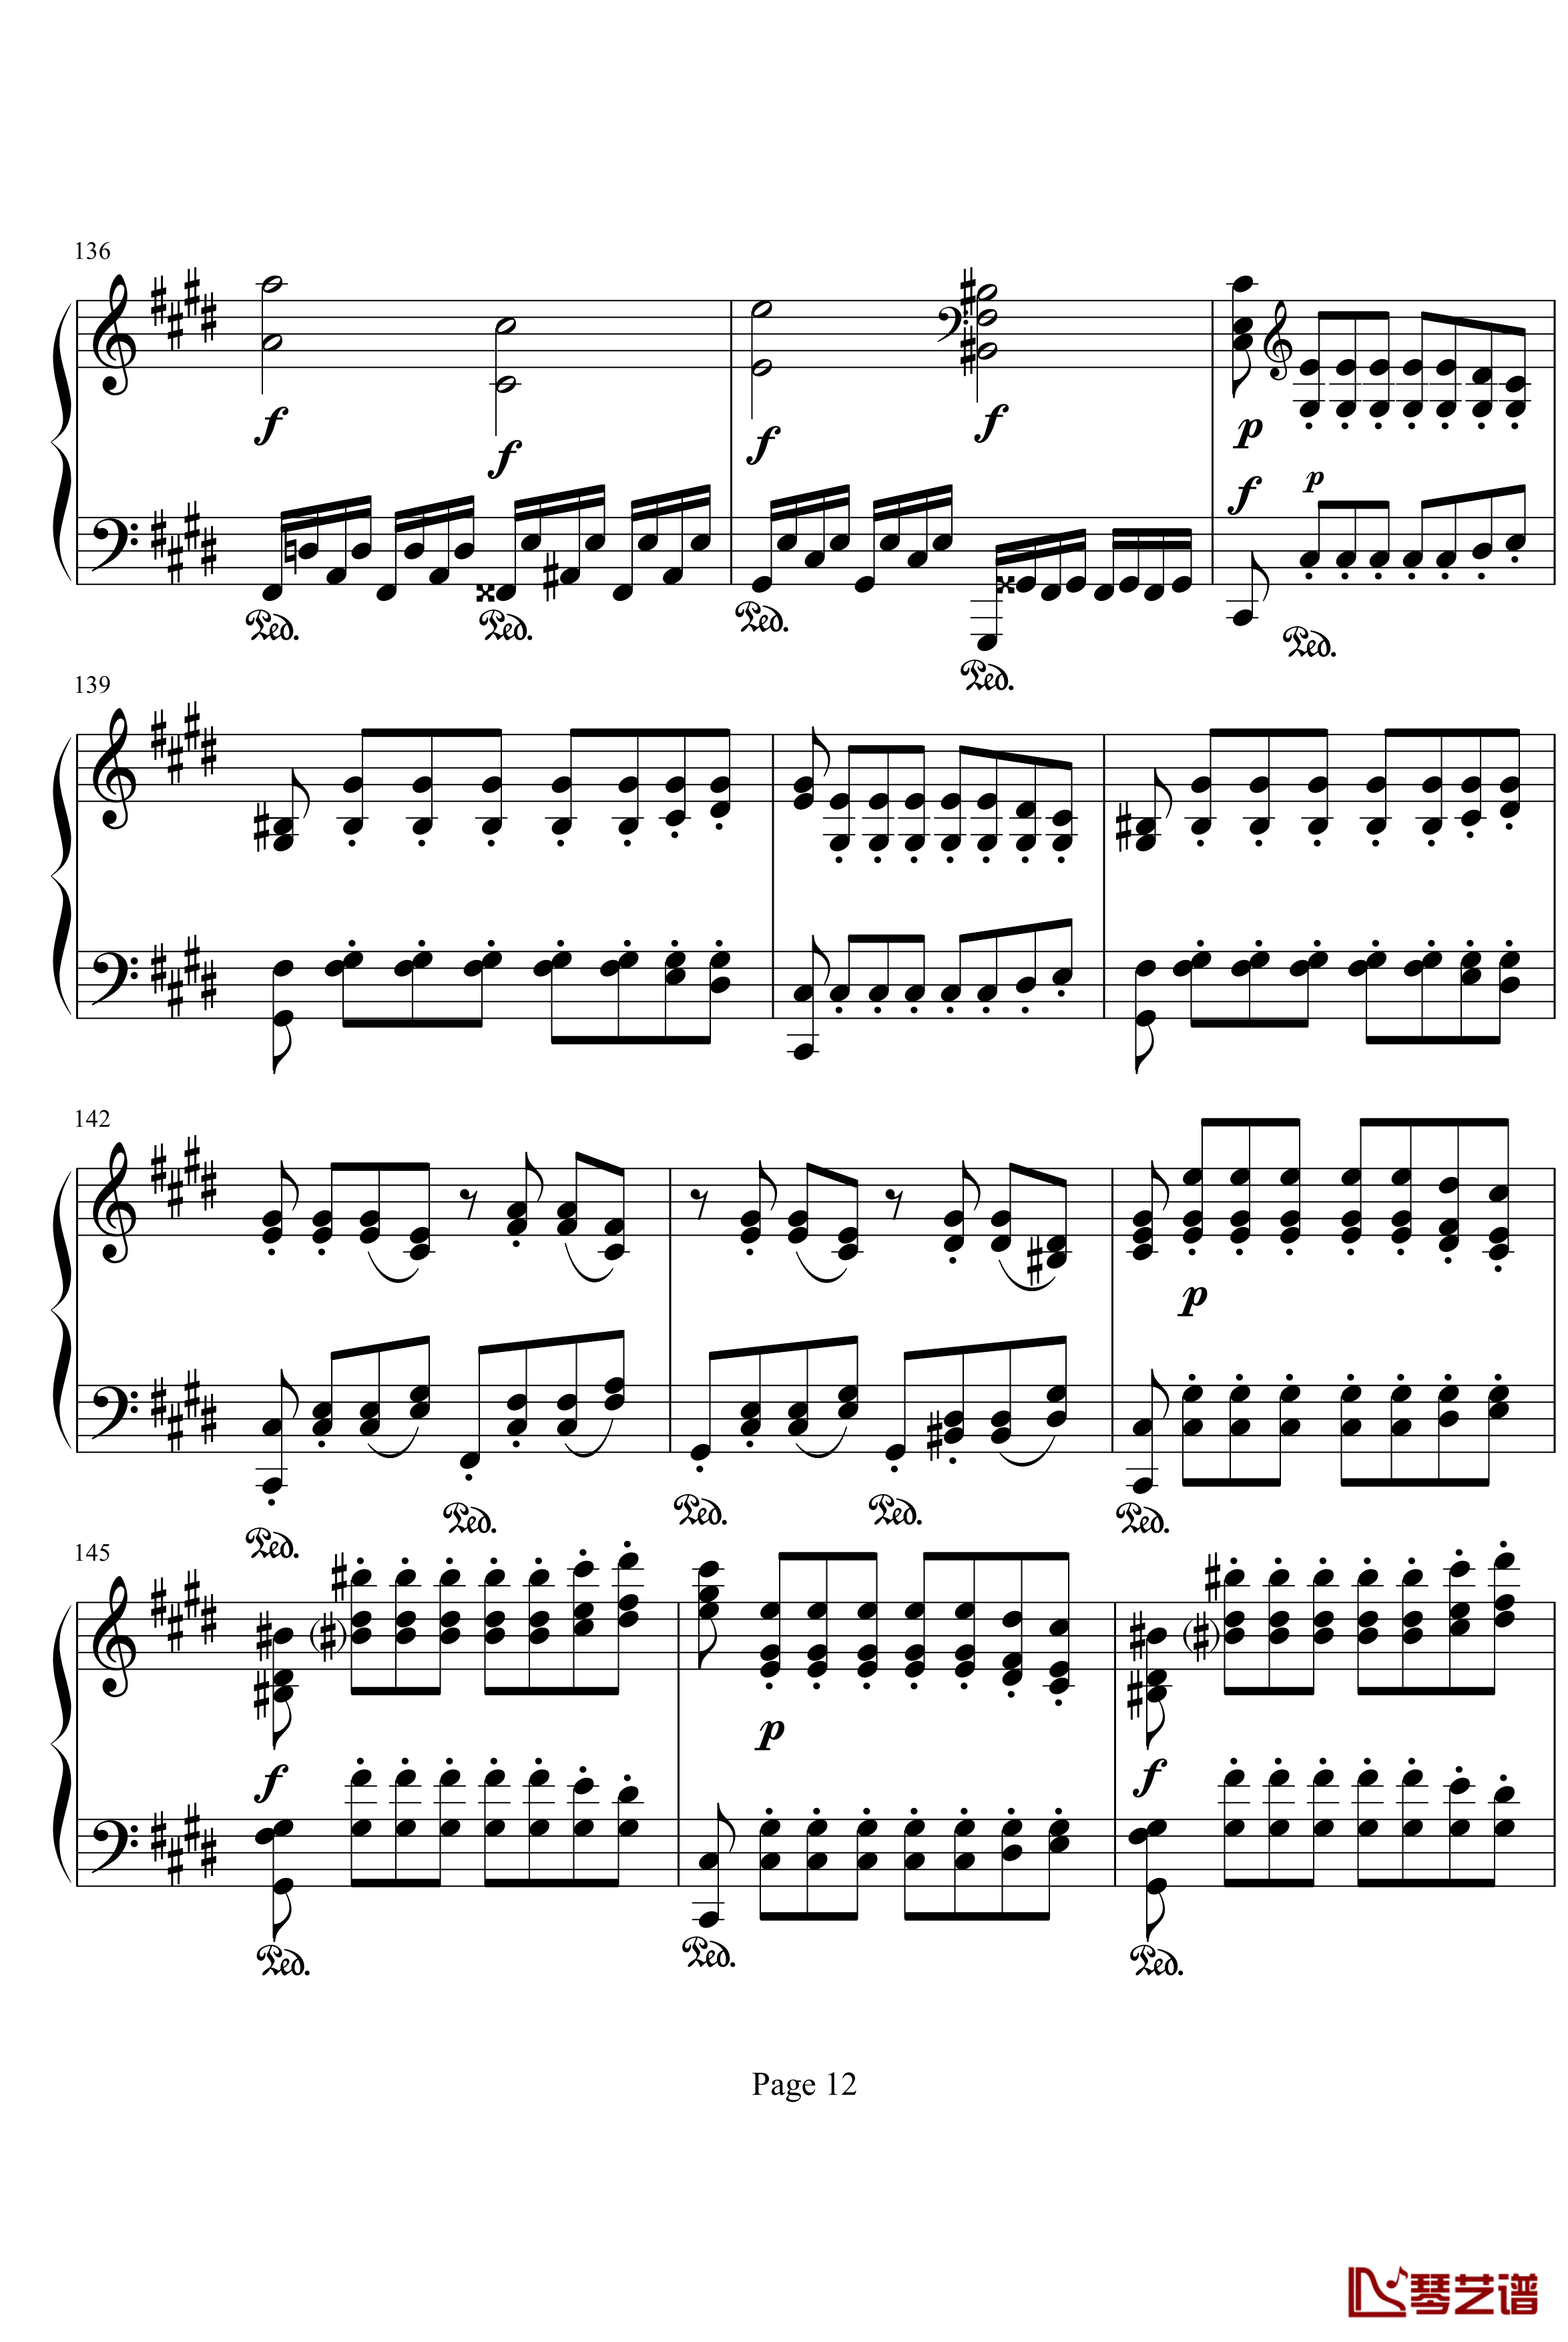 月光奏鸣曲第三乐章钢琴谱-贝多芬-beethoven12